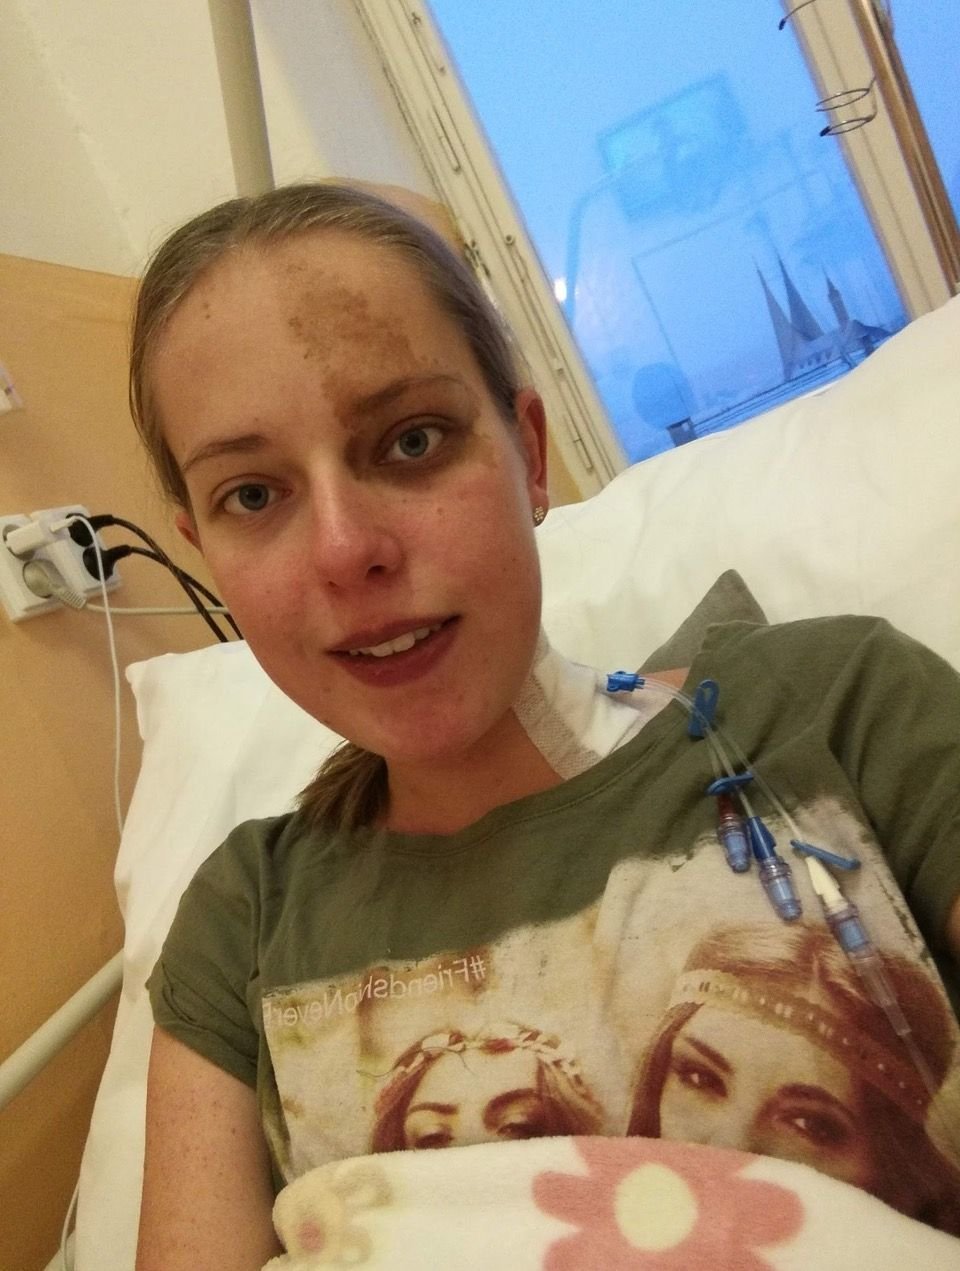 Bára podstoupila transplantaci plic, ta jí zachránila život.